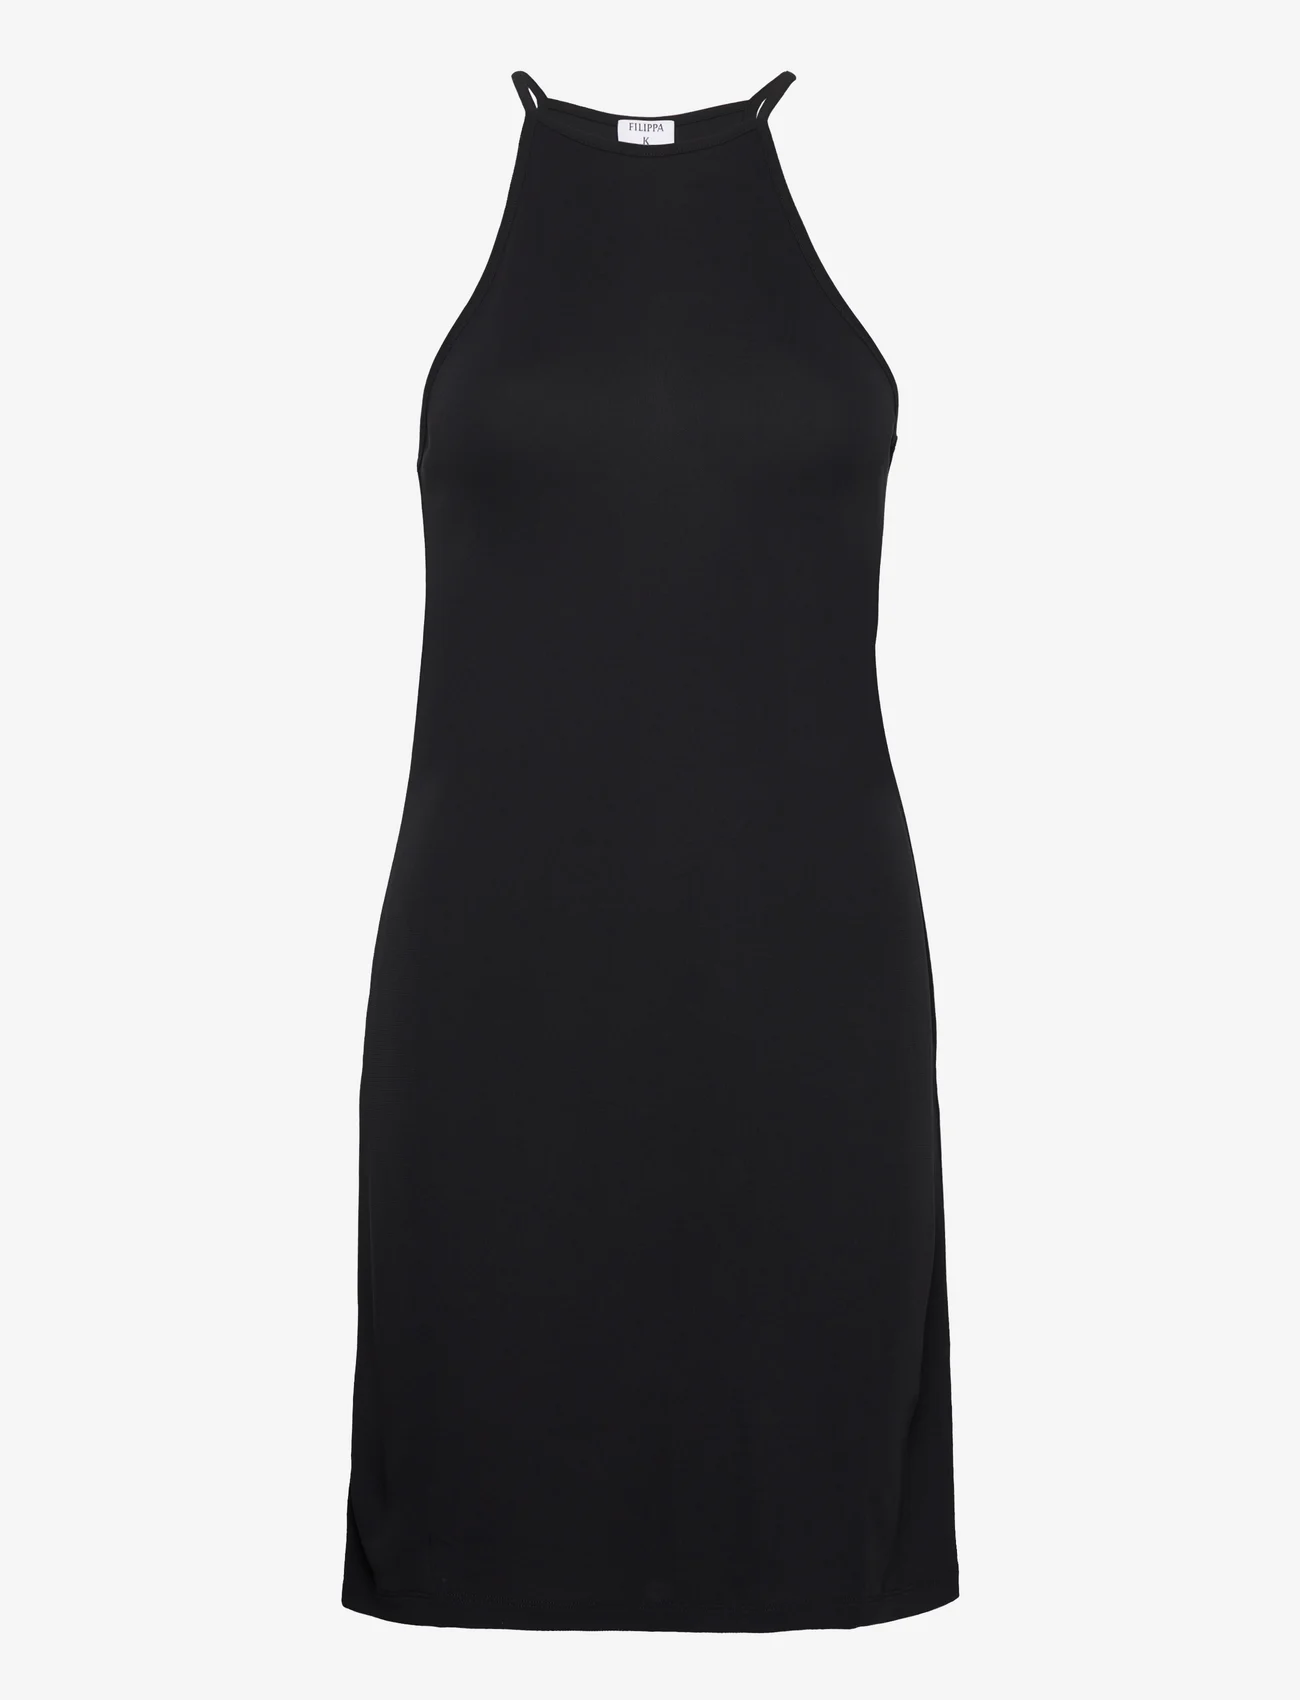 Filippa K - Strap Jersey Dress - tettsittende kjoler - black - 0